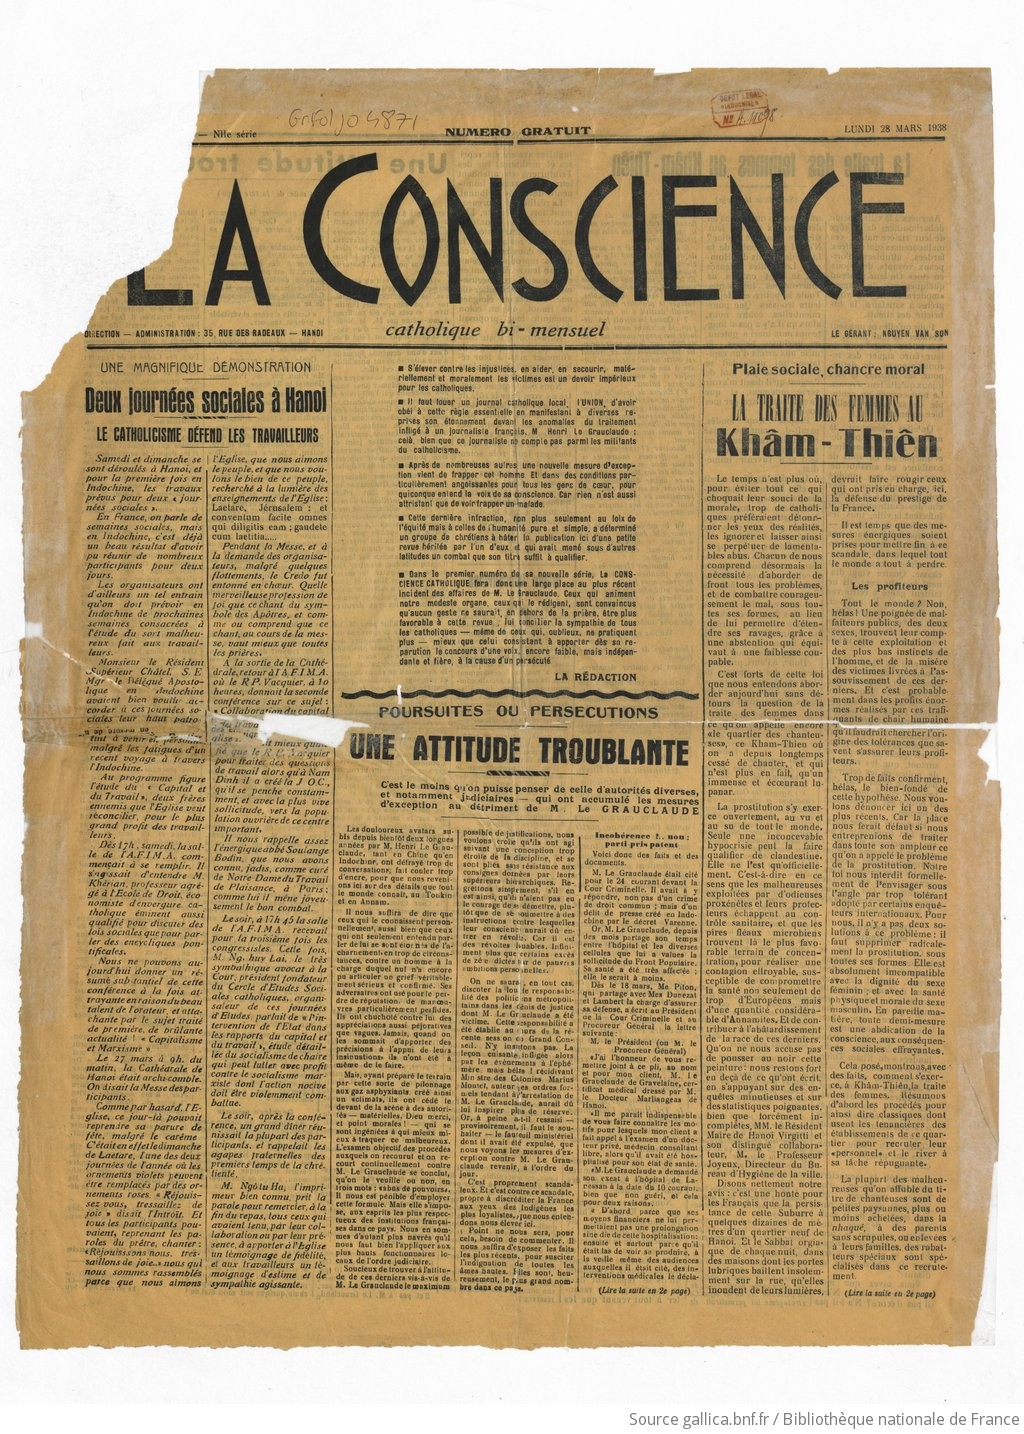 La Conscience. Catholique bi-mensuel   1938